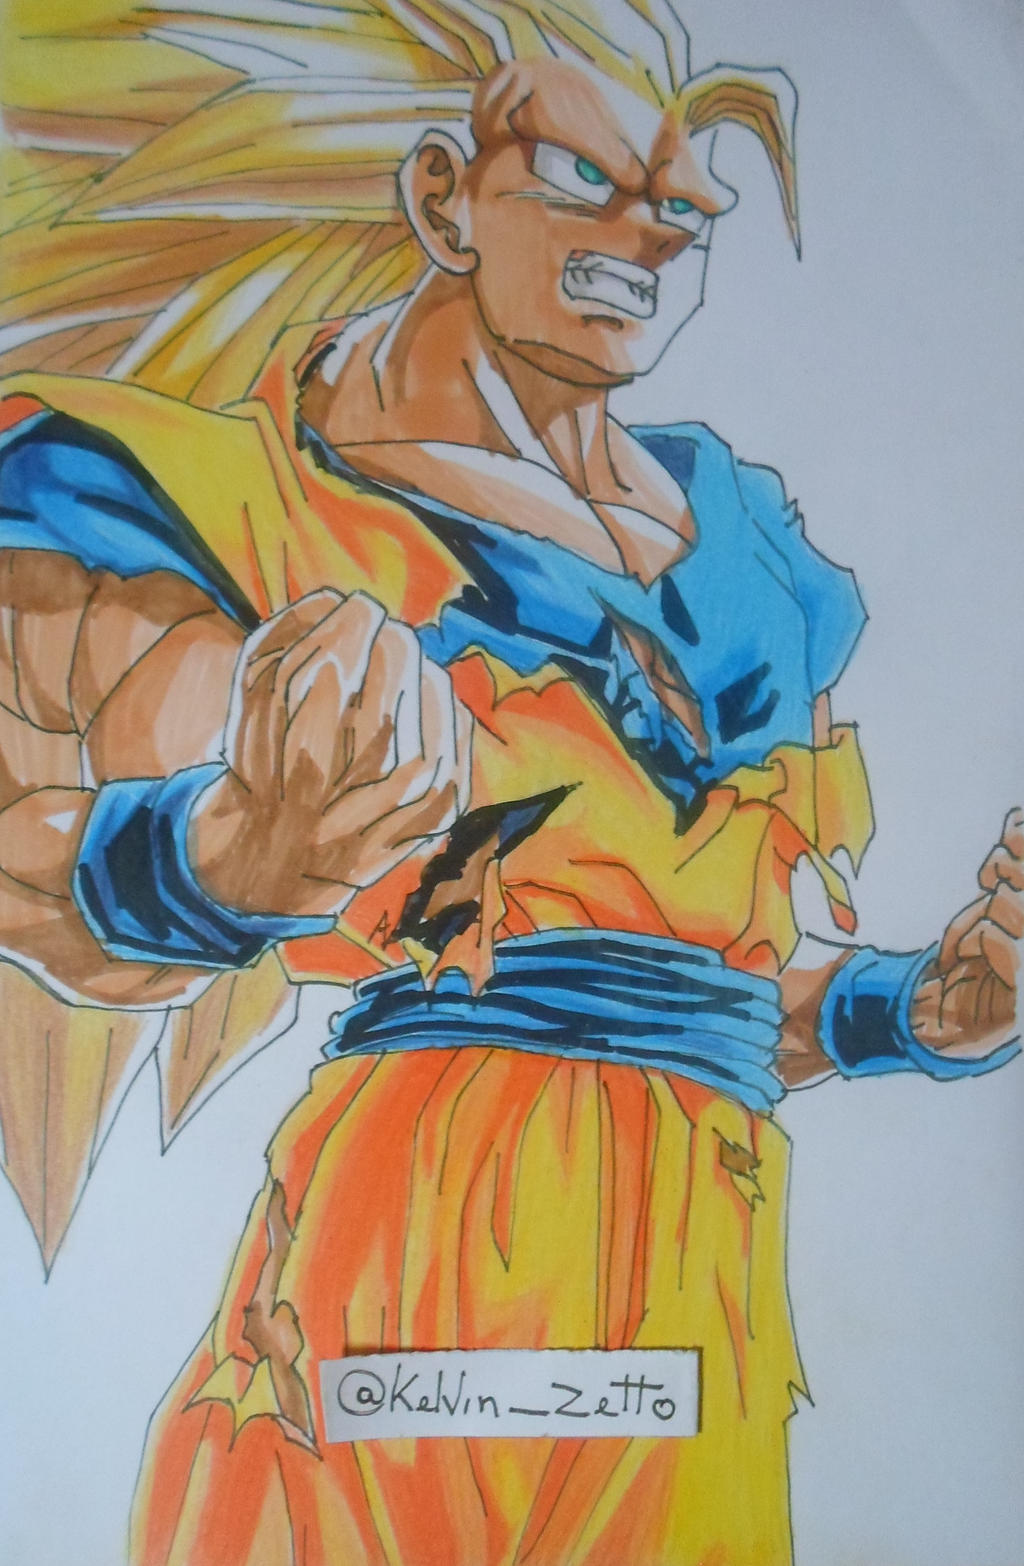 Desenhando Goku SSJ 5 - Speed Drawing Goku SSJ 5 